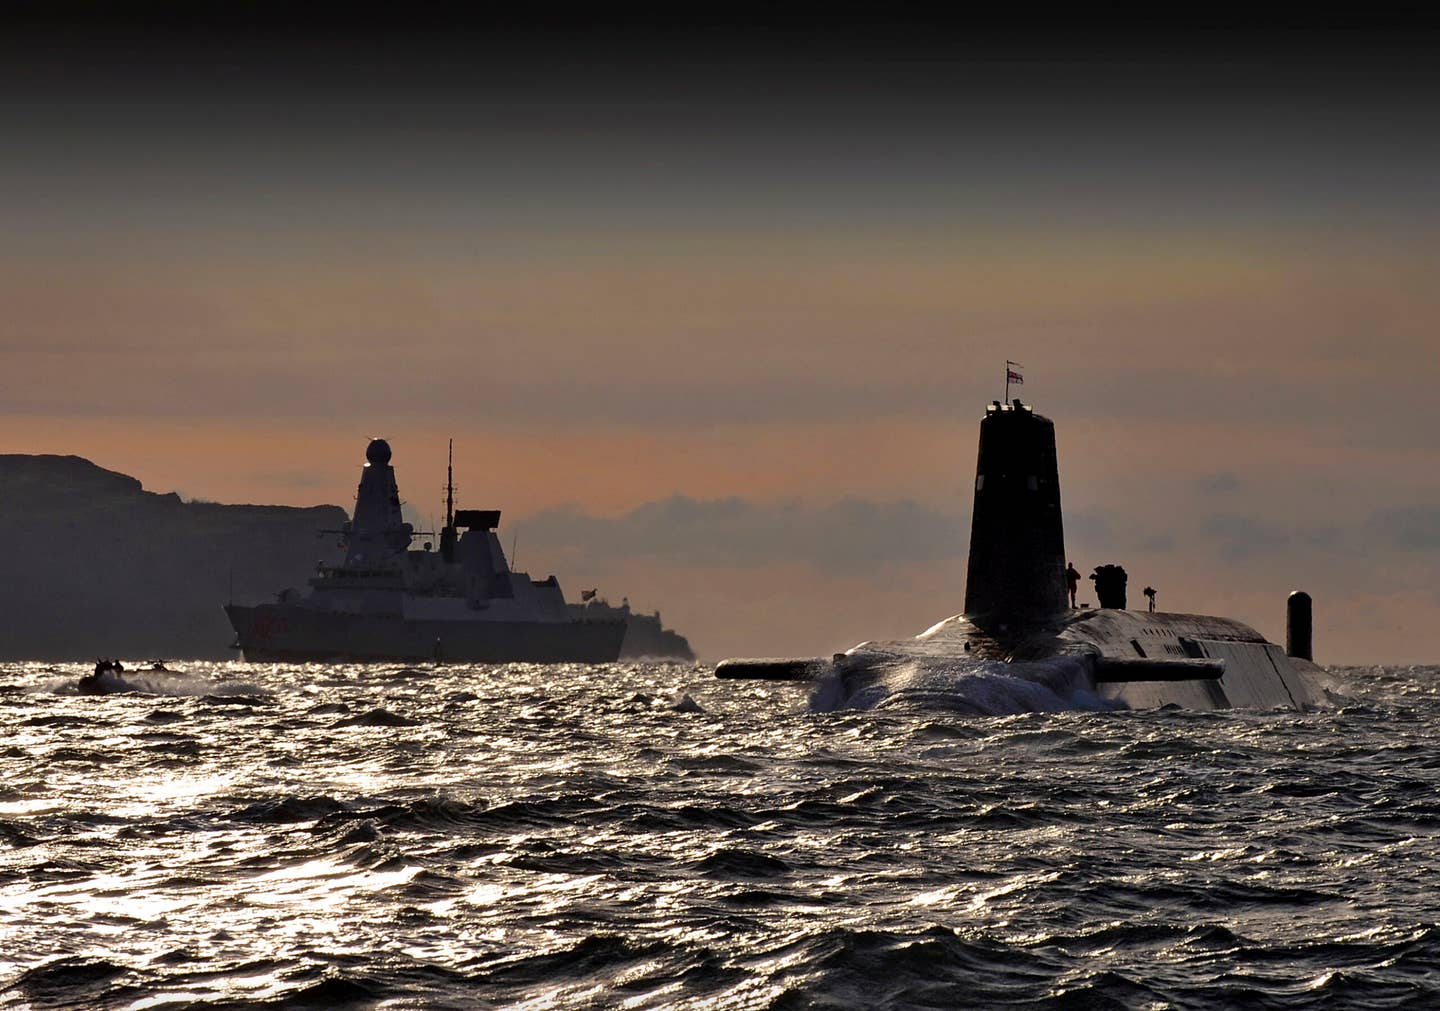 HMS <em>Vanguard</em> arrives back at HM Naval Base Clyde, Faslane, Scotland following a patrol. The Type 45 destroyer HMS <em>Dragon</em> can be seen in the background. <em>Crown Copyright</em>